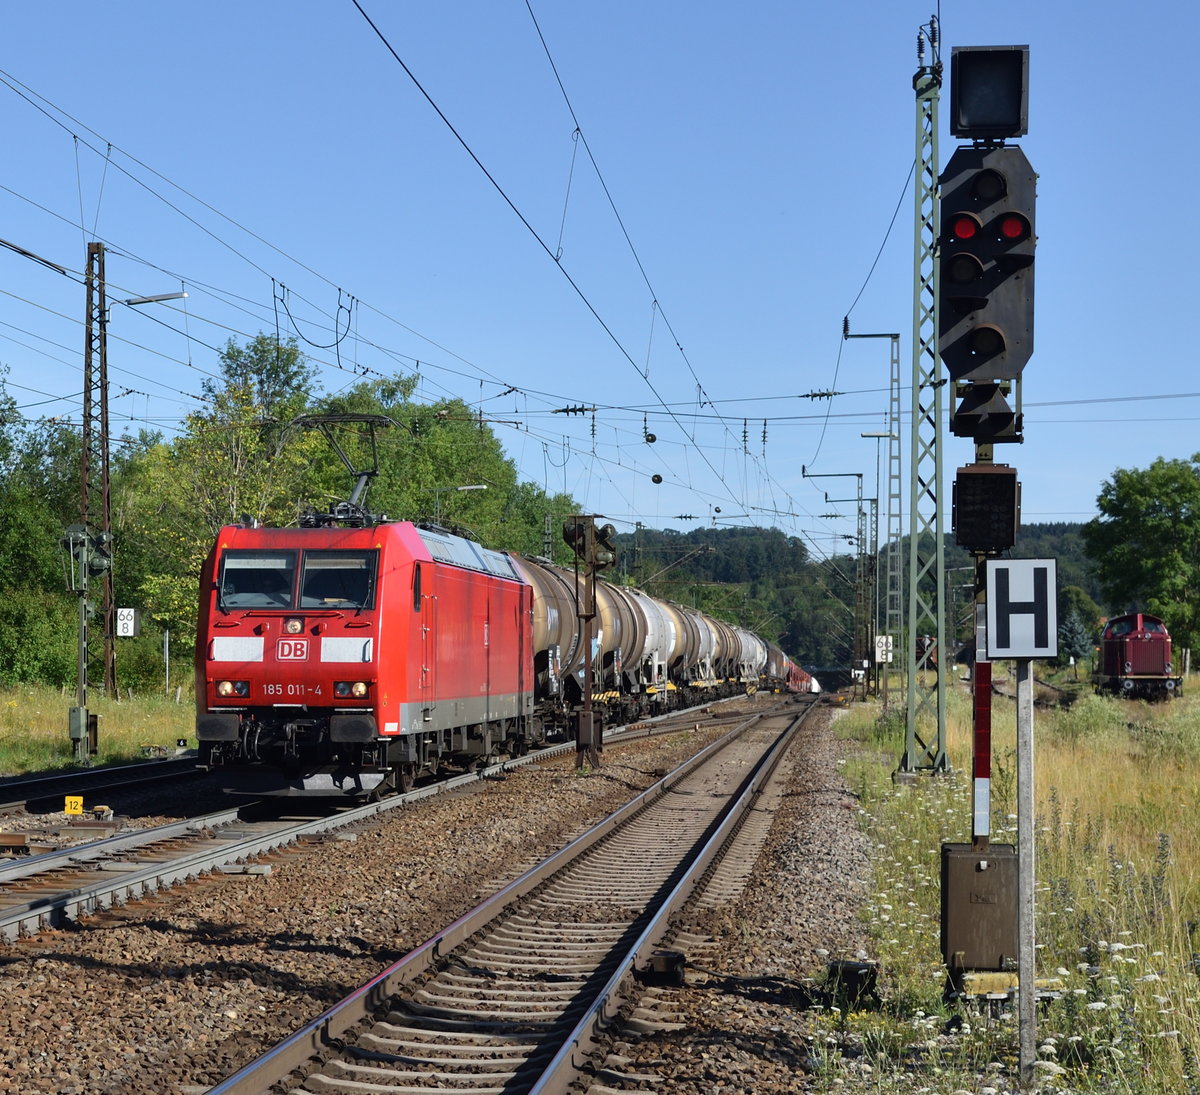 185 011 erklimmt mit einem gem.Güterzug die Geislinger Steige mit Schub von Günni Güterzug :-).
(Amstetten(Württ.)18.7.2020)